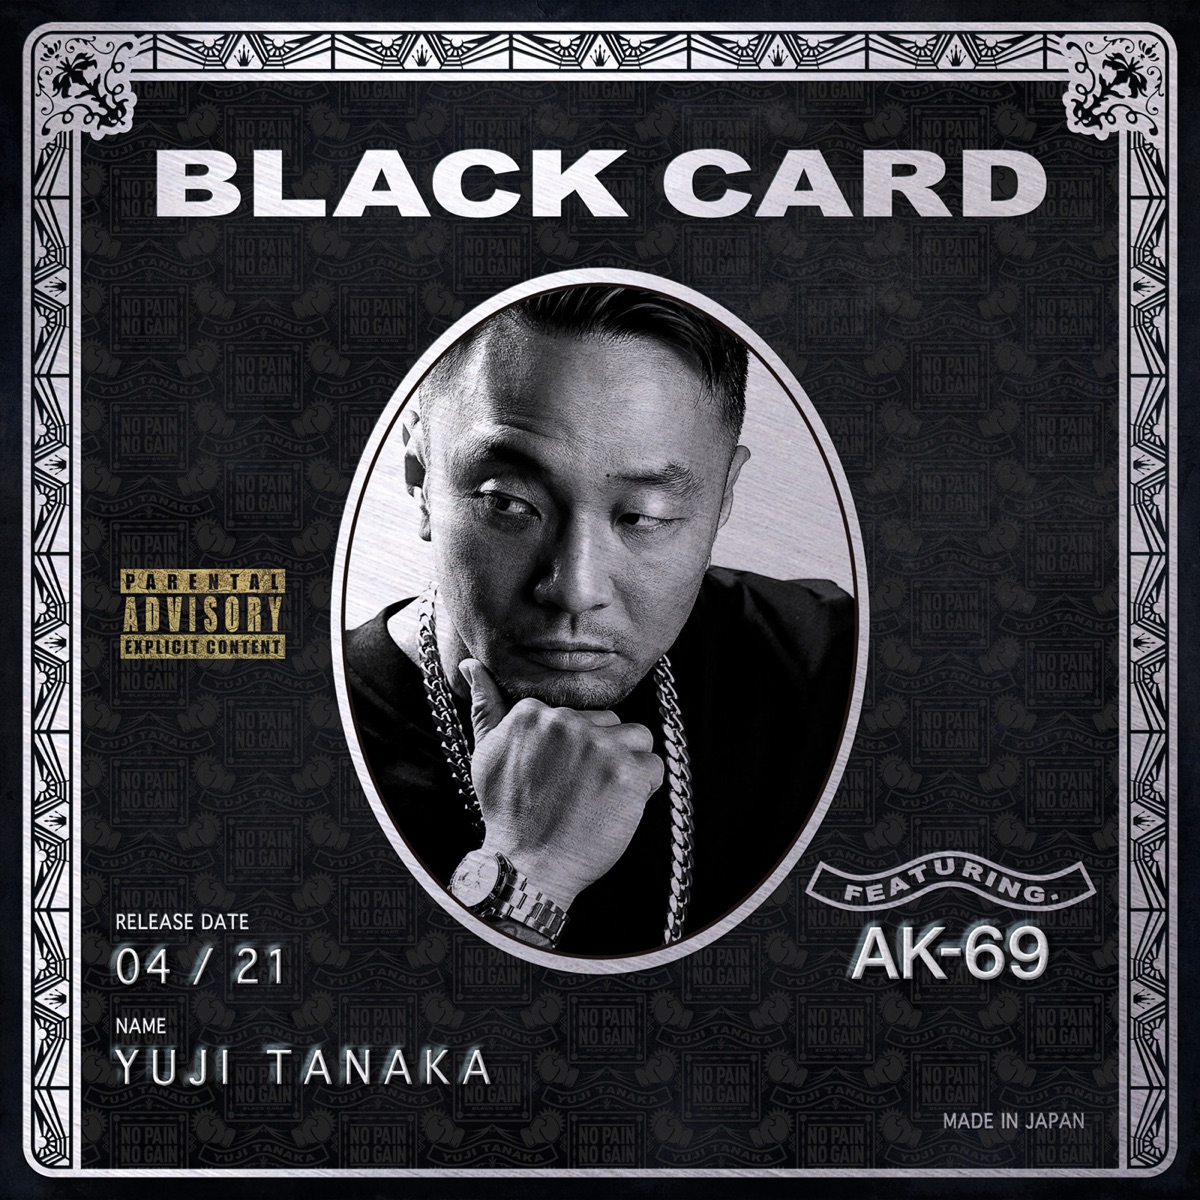 『田中雄士 - BLACK CARD feat. AK-69 歌詞』収録の『BLACK CARD feat. AK-69』ジャケット